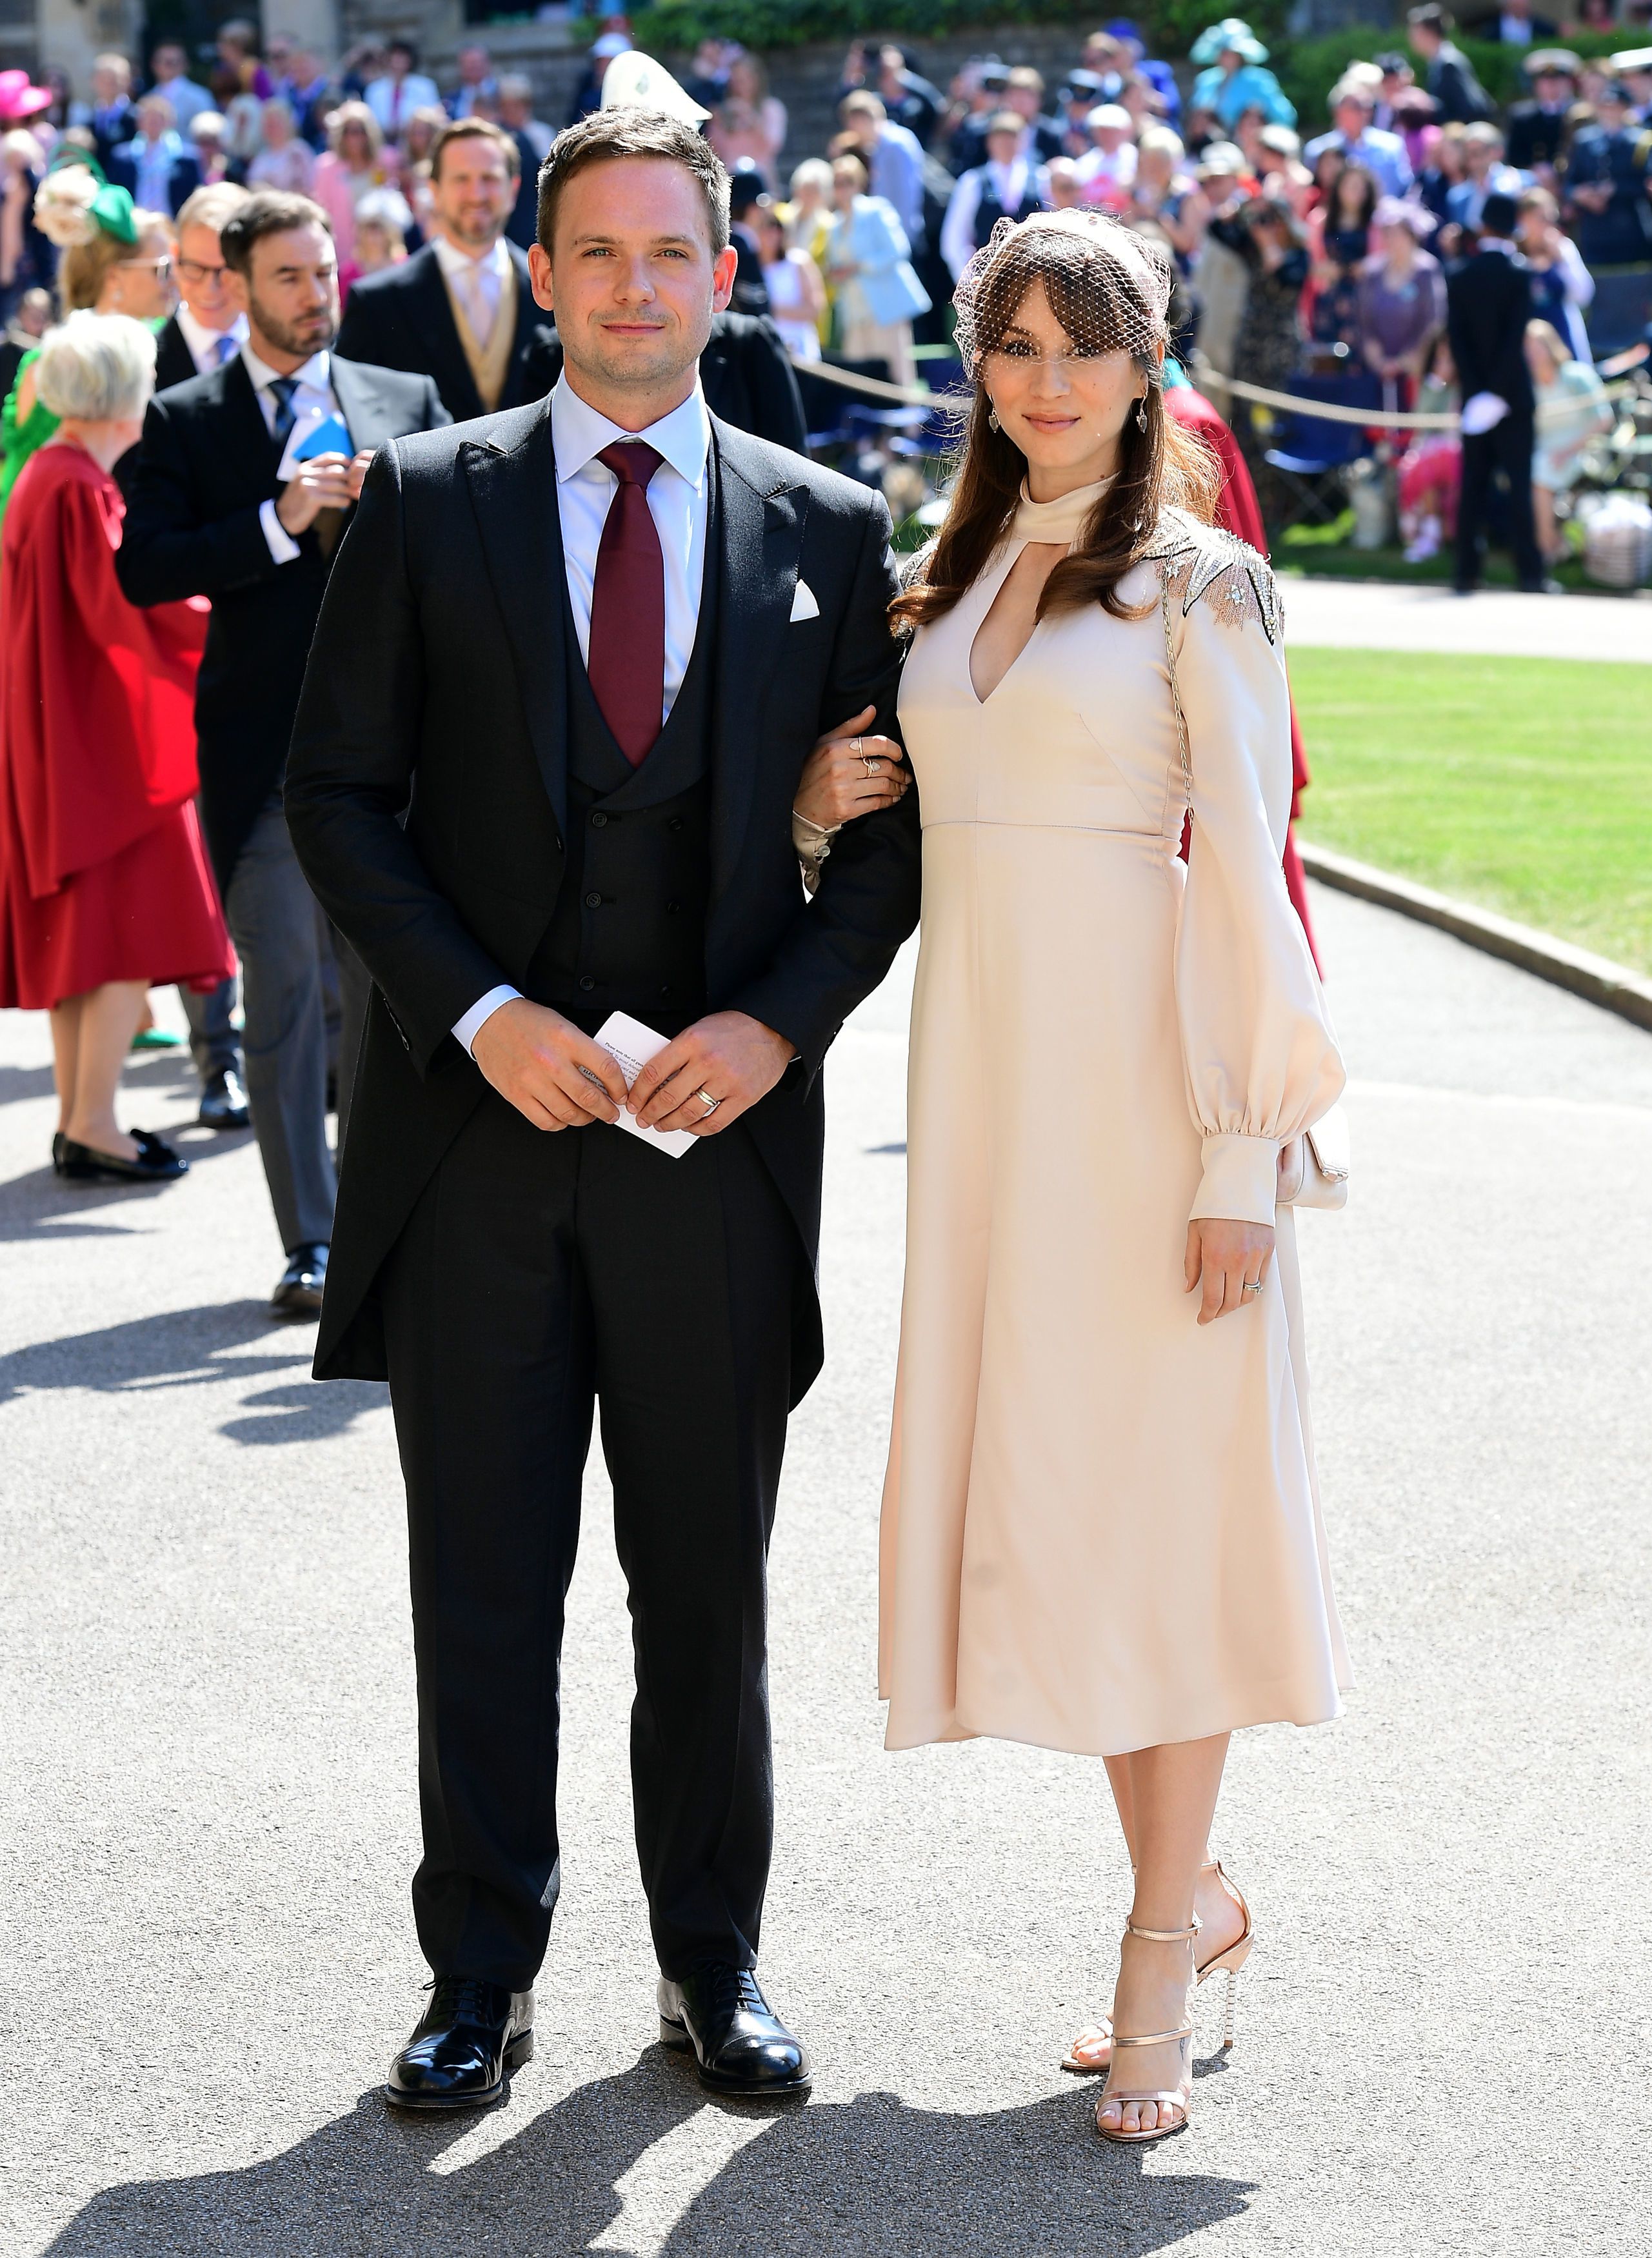 Suits Star Patrick J Adams Hits Back At Woman Who Fat-Shamed His Royal Wedding Appearance